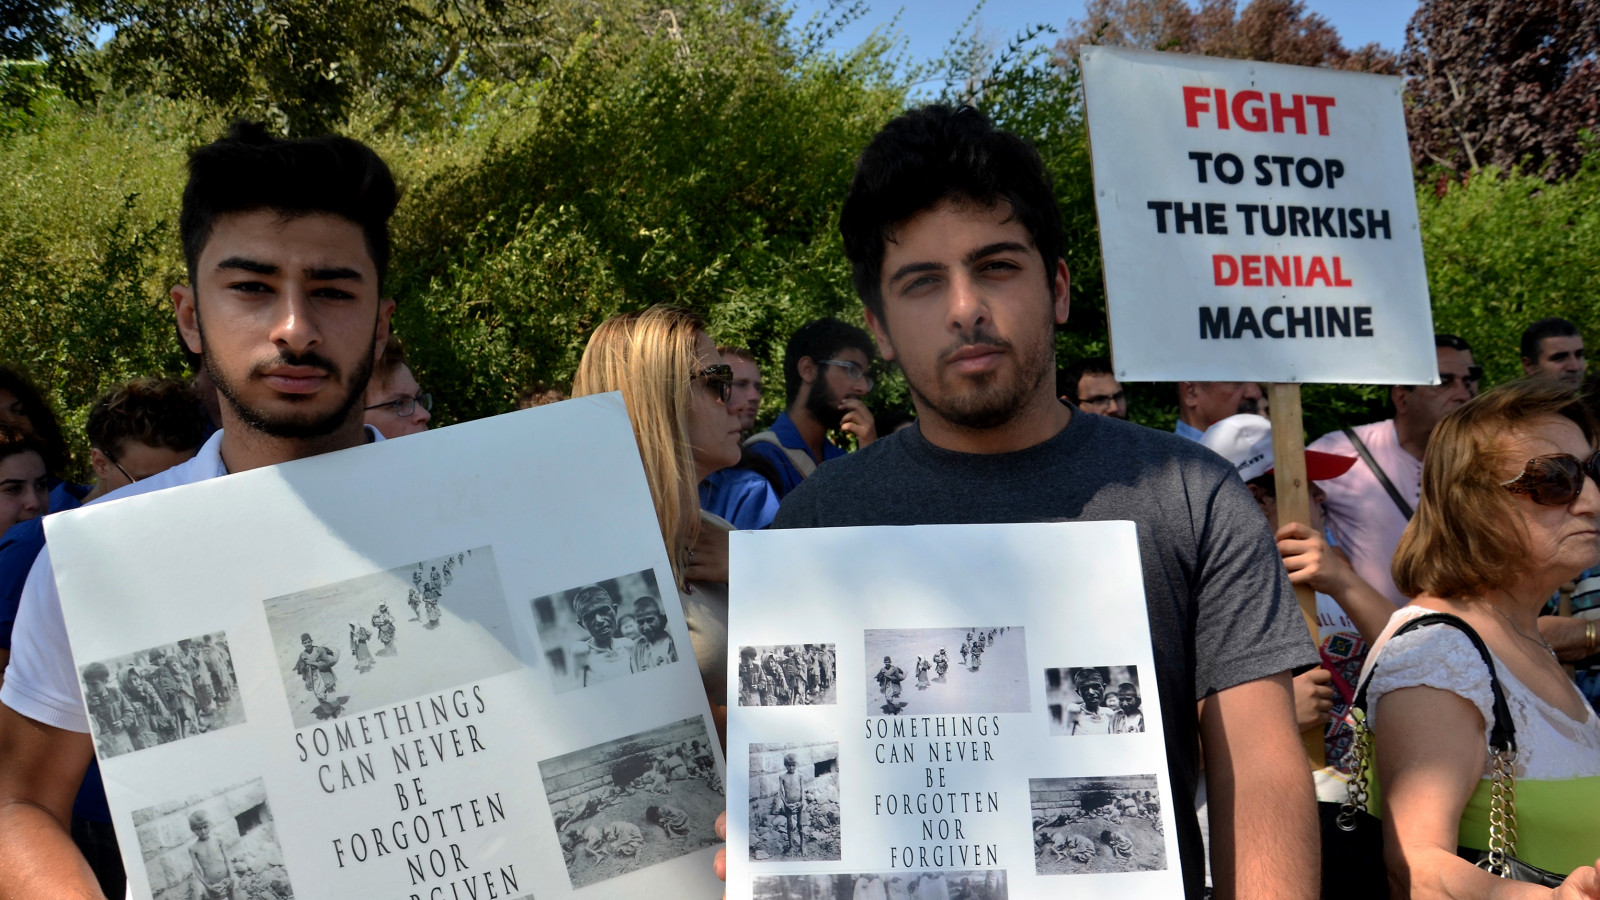 הפגנה מחוץ לדיון על הכרה ברצח העם הארמני בכנסת. צילום: אוריאל לוי